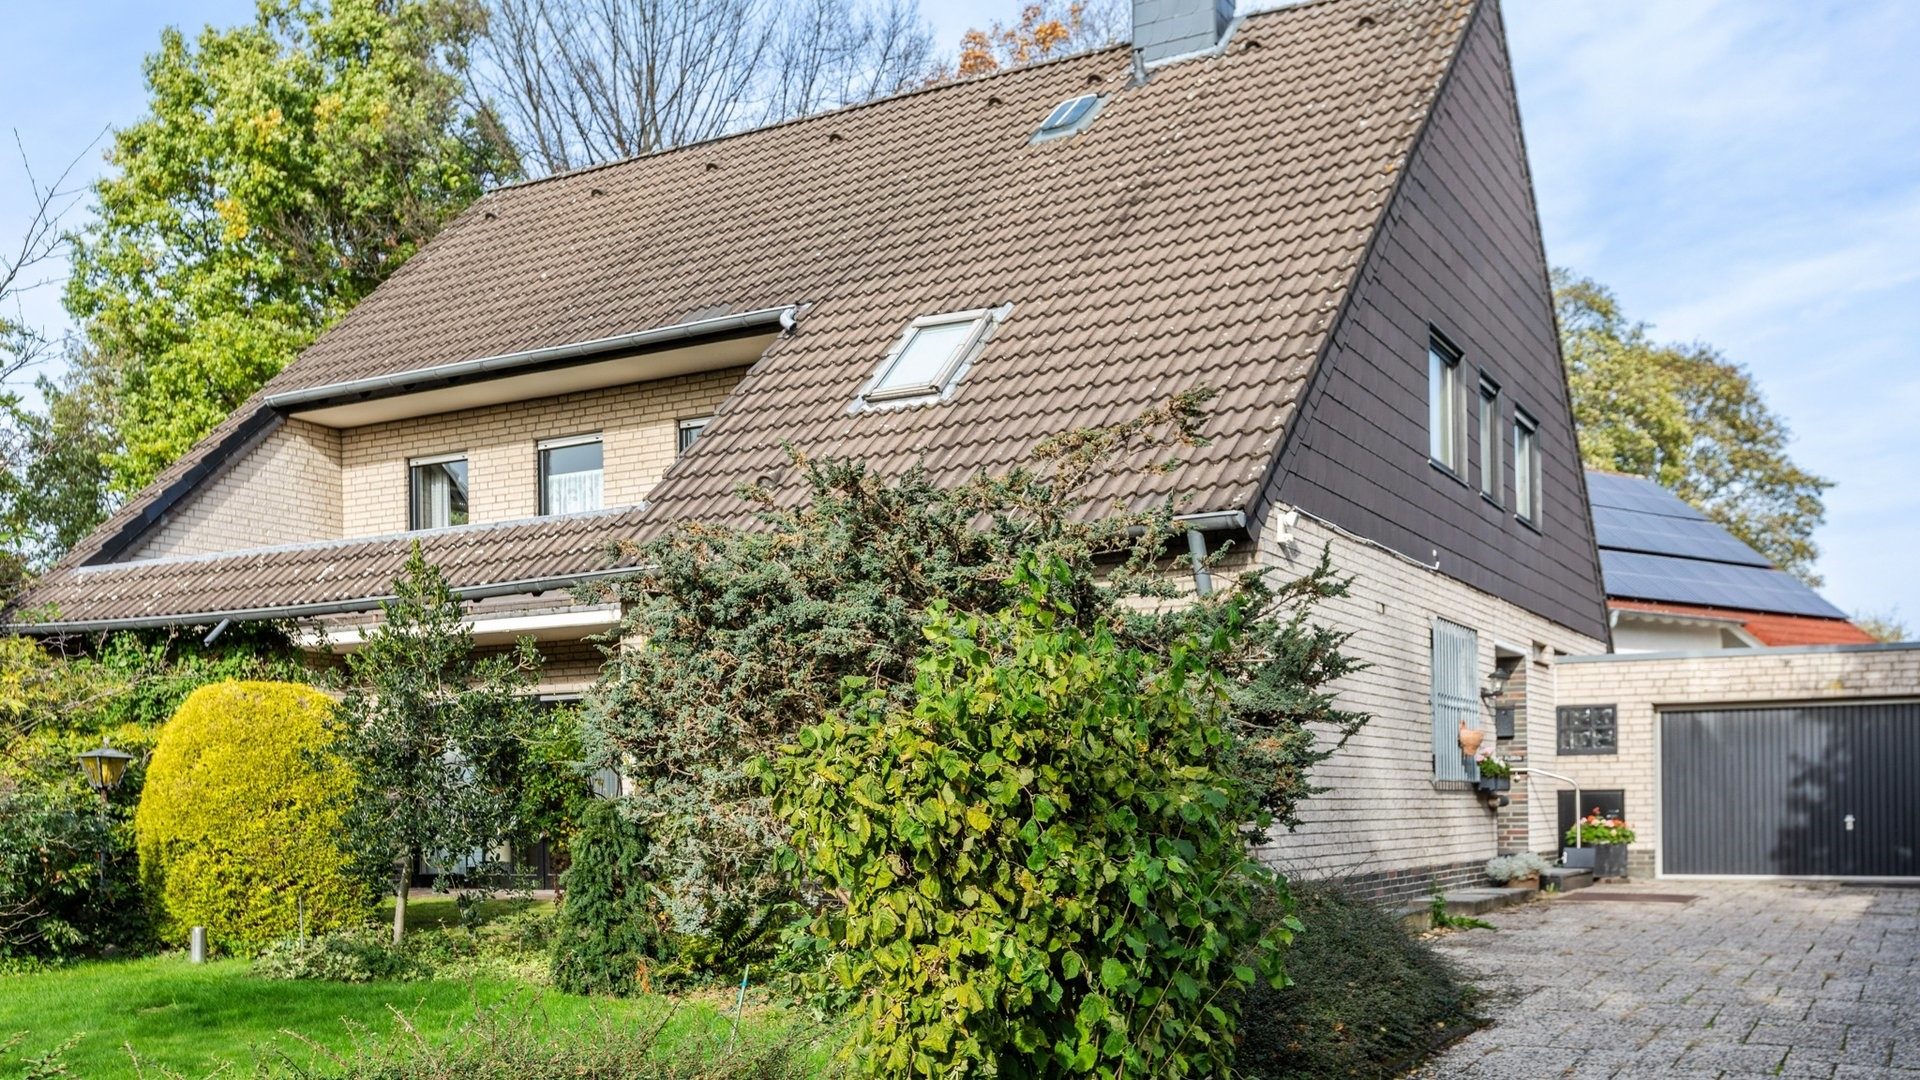 Böcker Wohnimmobilien - Immobilienangebot - Düsseldorf/Kalkum - Alle - Ruhiges freistehendes Einfamilienhaus mit schönem Garten in Kalkum